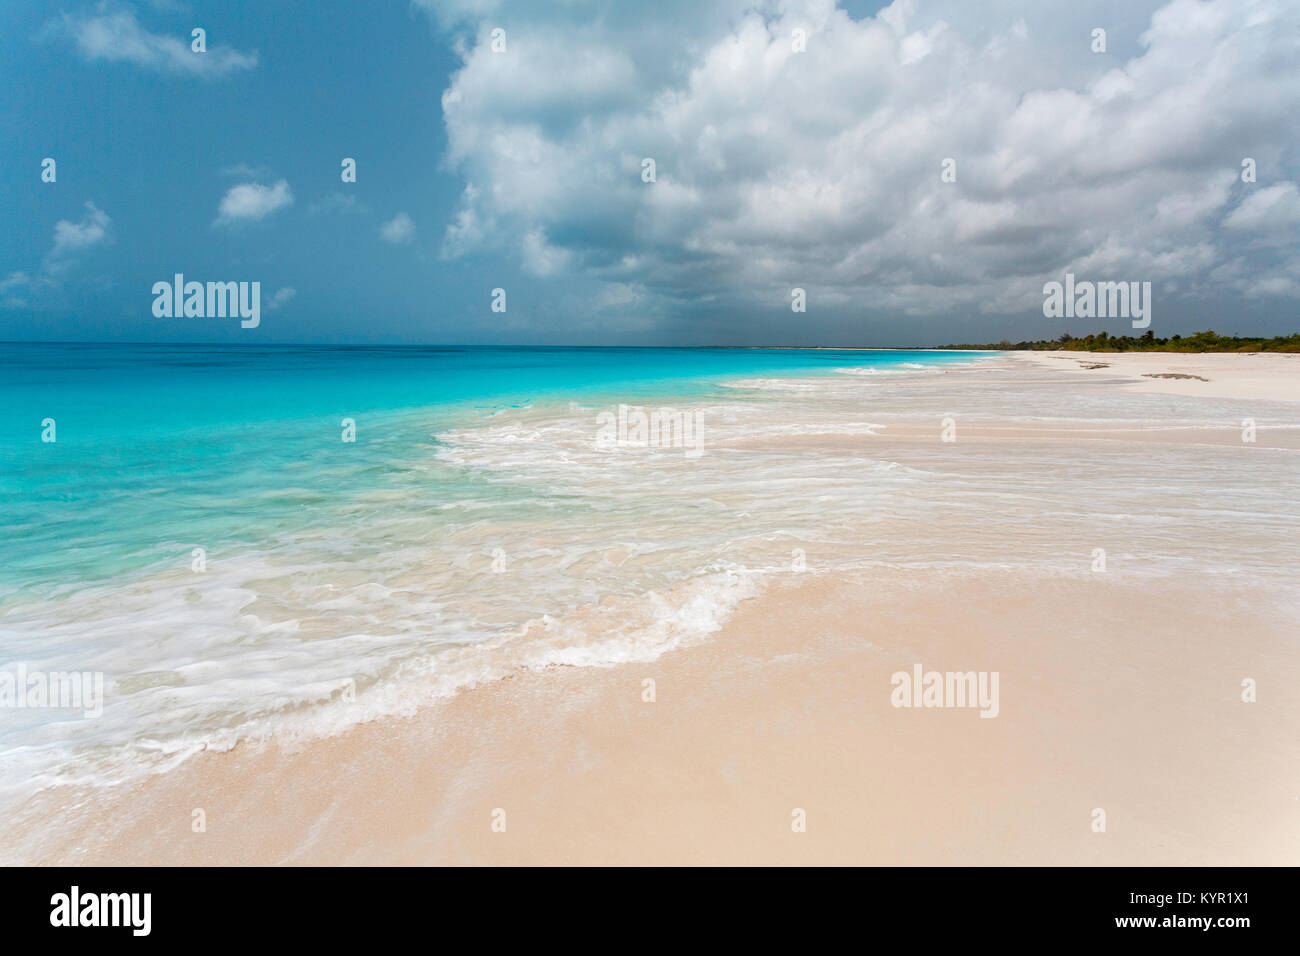 Die wahnsinnig schönen türkisfarbenen Wasser und rosa Sandstrände von Barbuda, Karibik Inseln Stockfoto